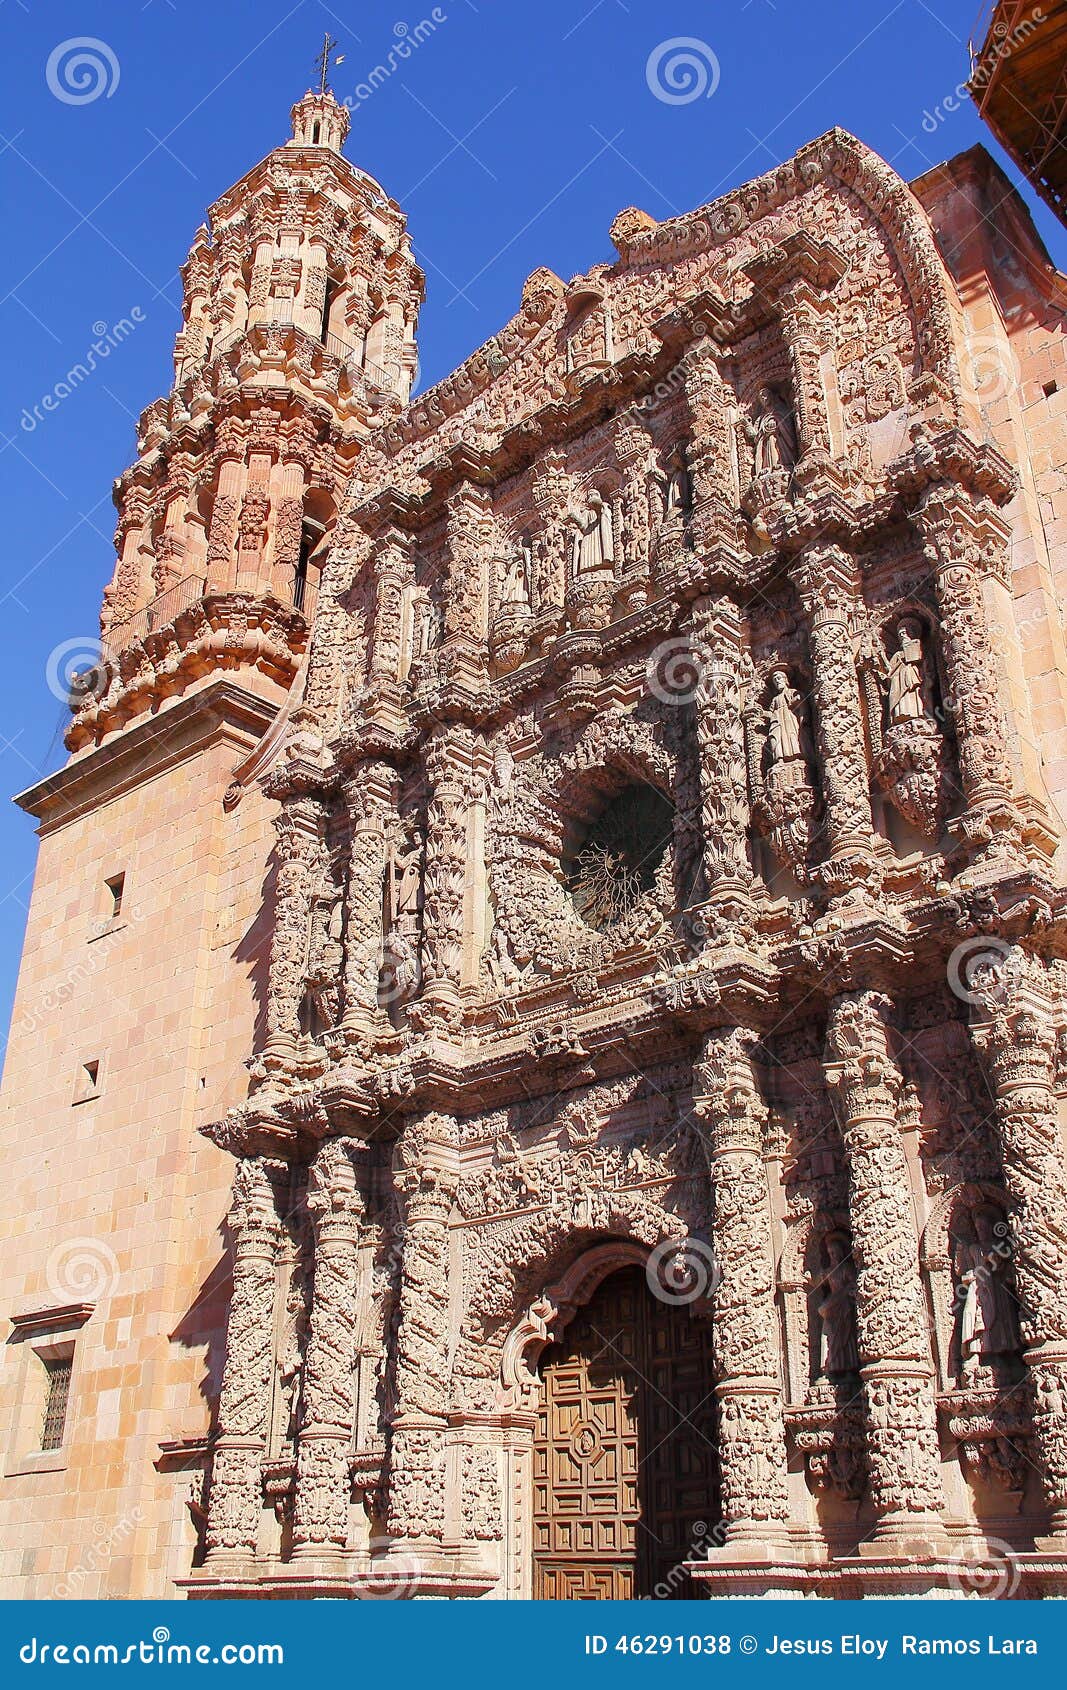 baroque facade of the zacatecas cathedral, mexico  v